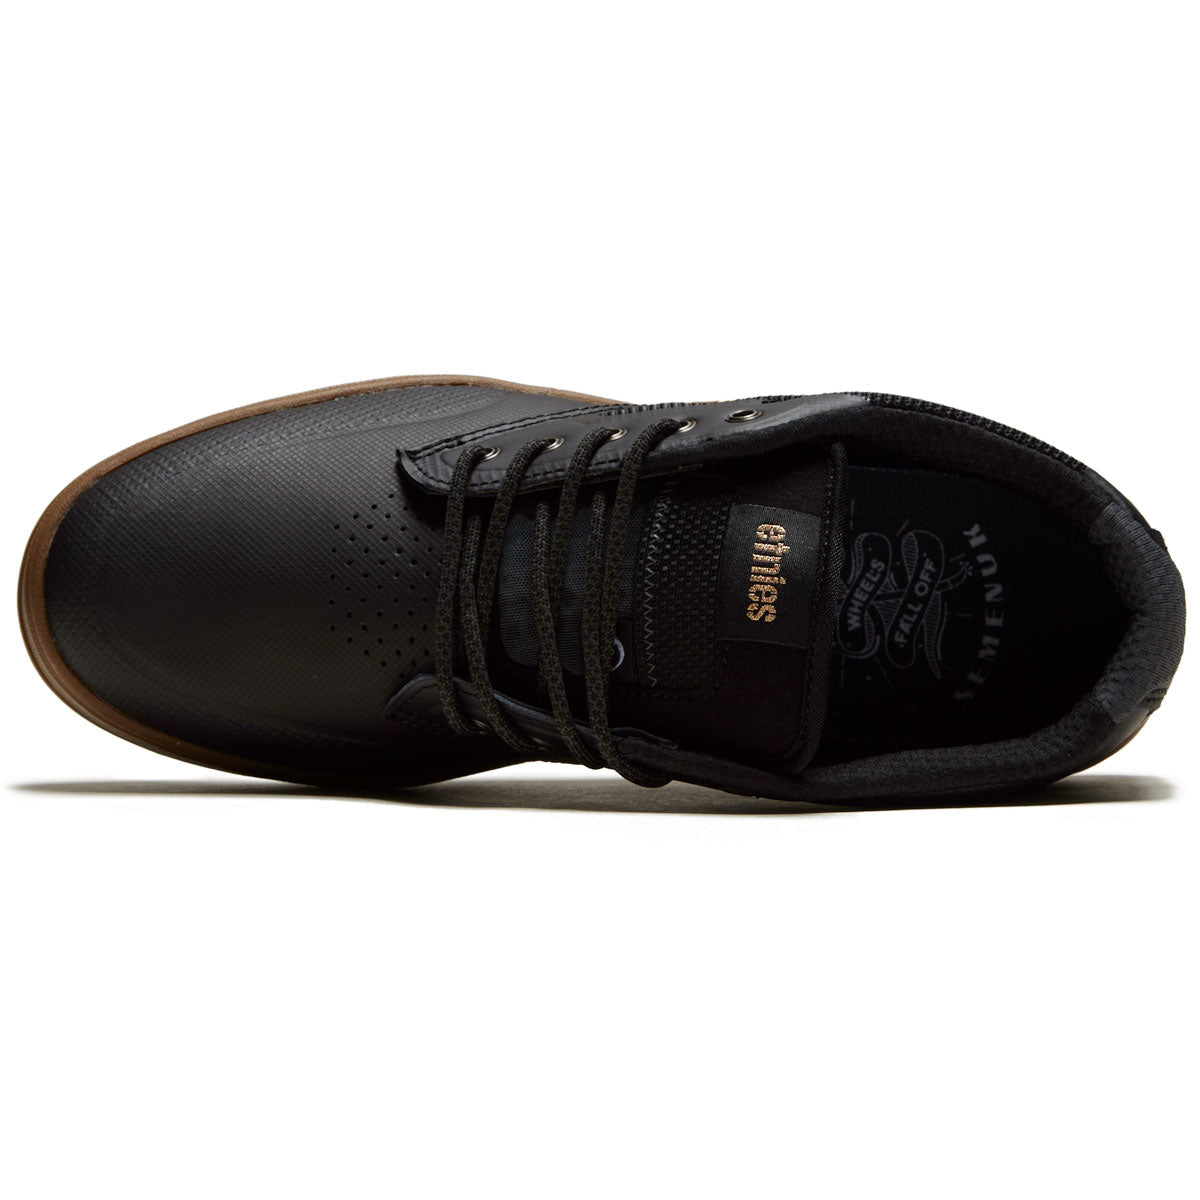 Etnies Semenuk Pro Shoes - Black/Gum image 3